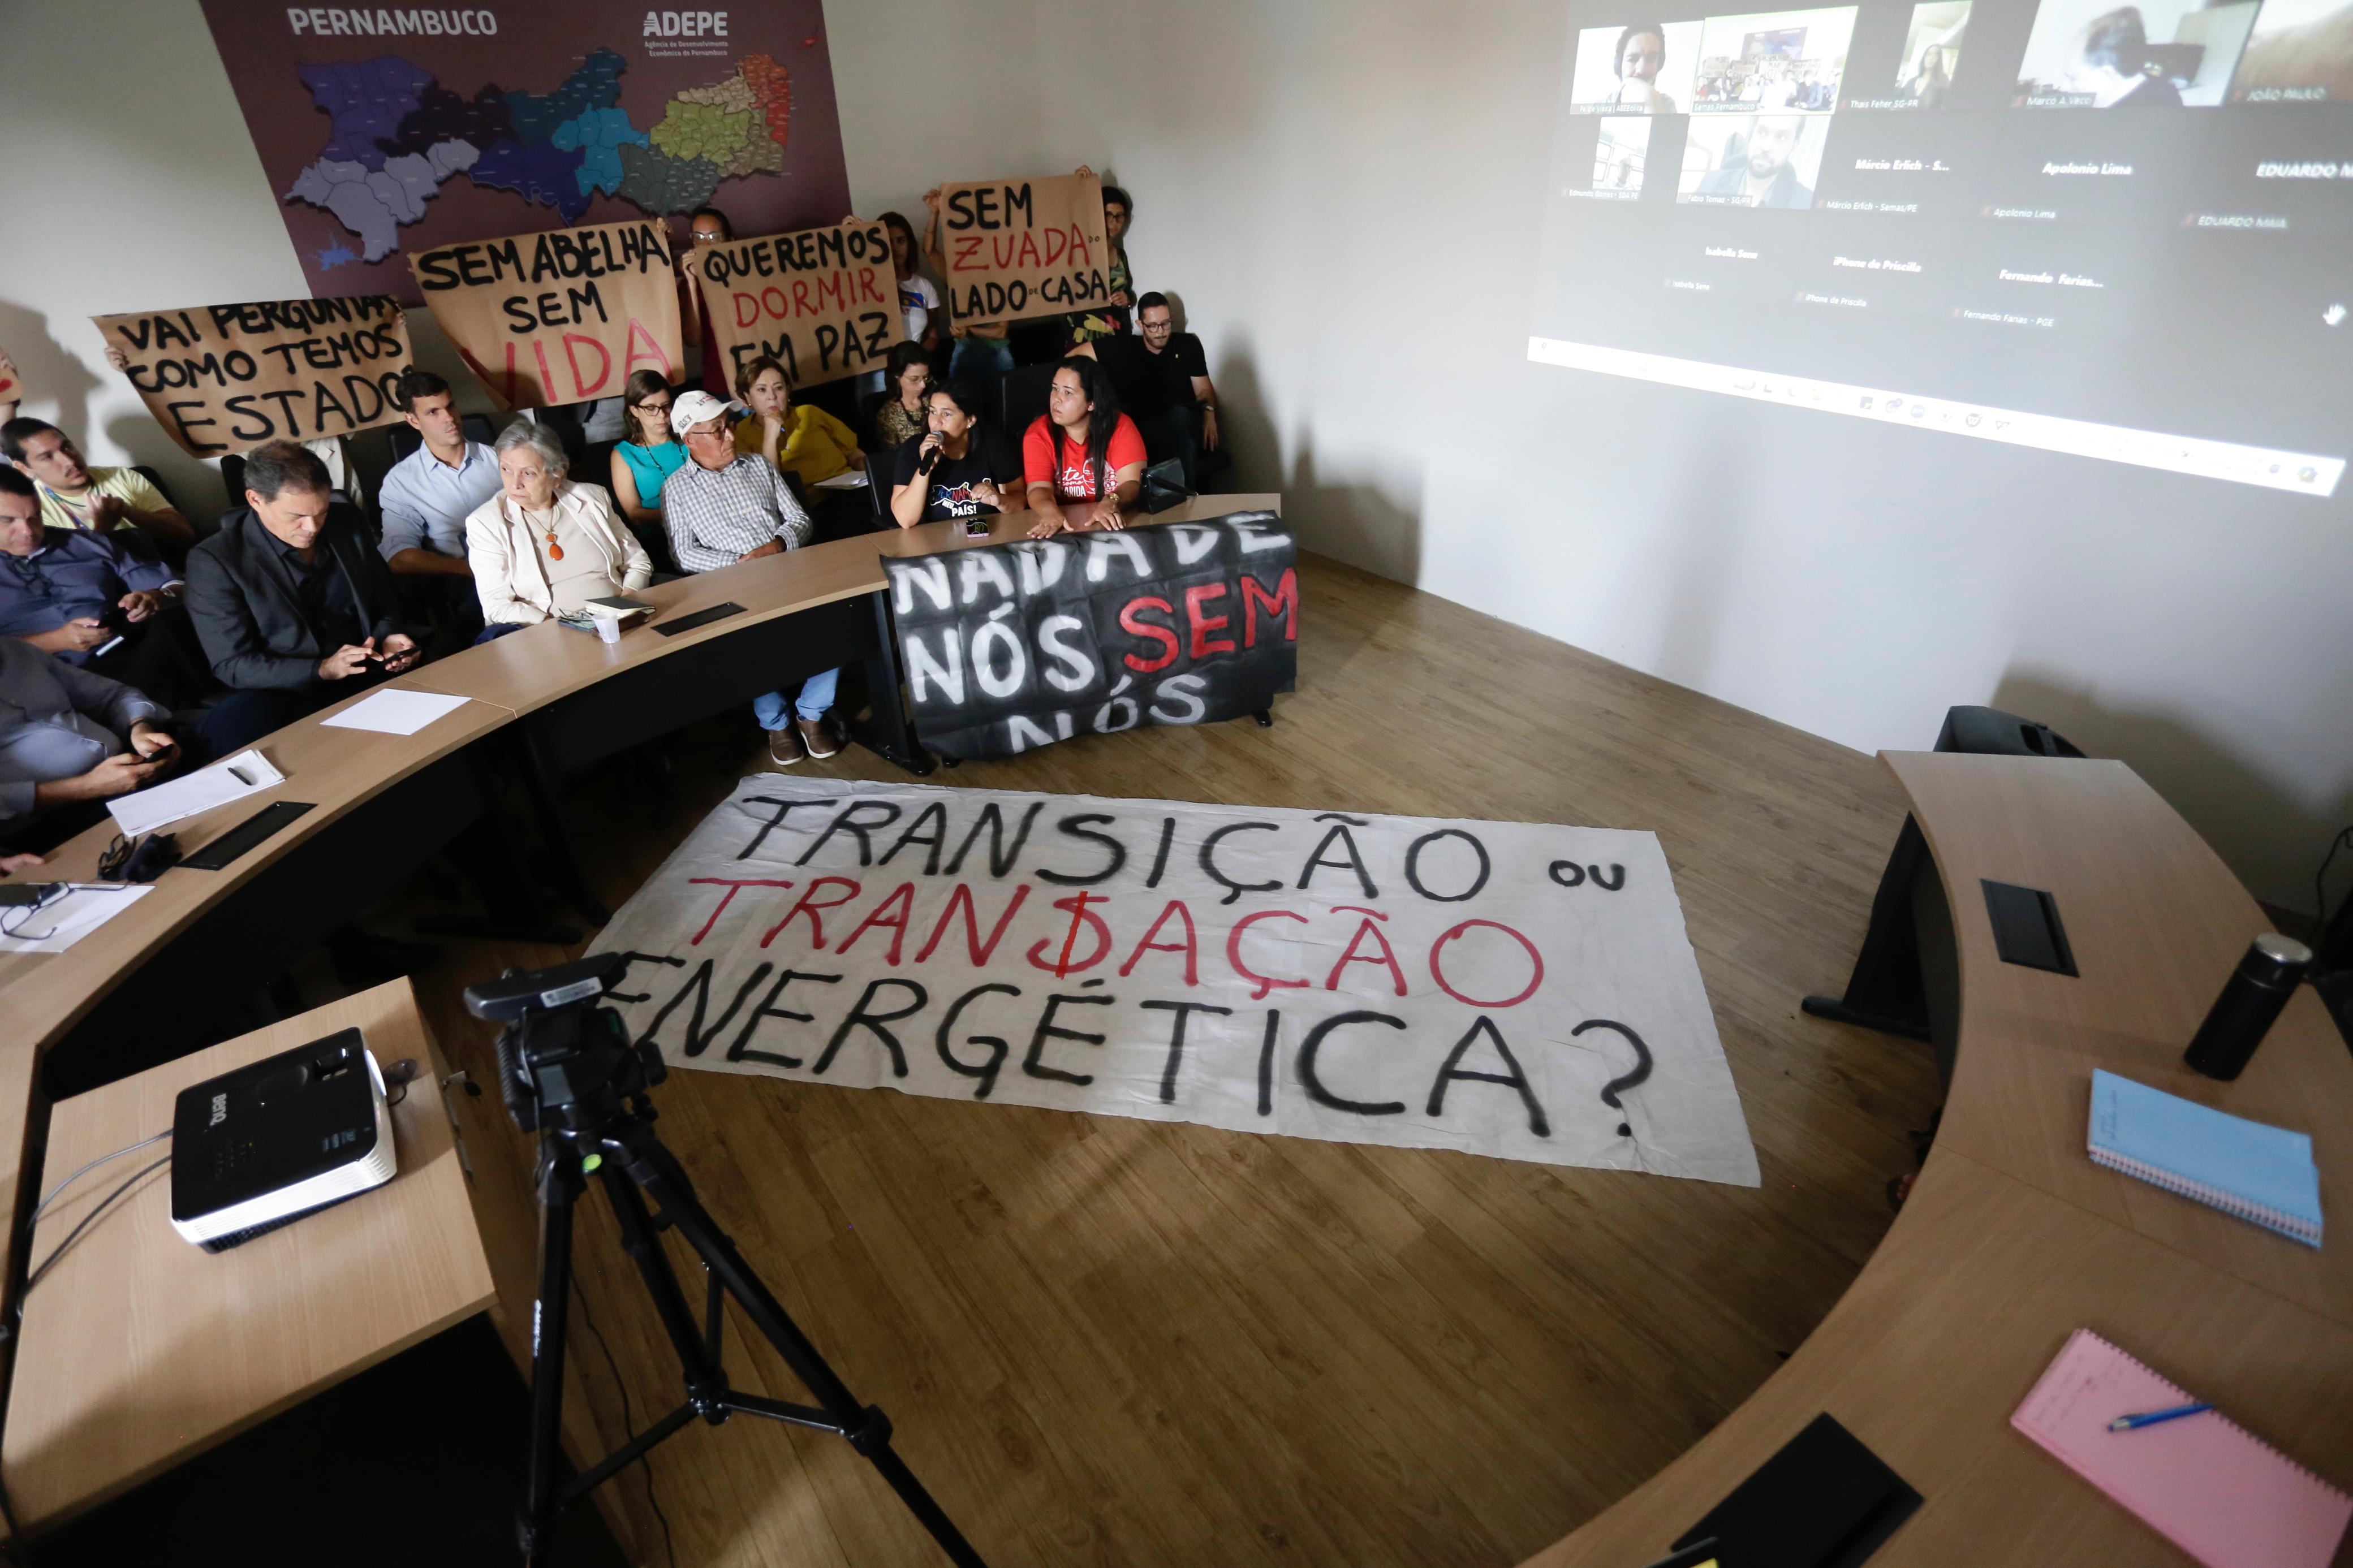 Foto da reunião do GT das renováveis, mostrando a sala cheia com uma faixa em destaque escrita transição ou transação energética?.